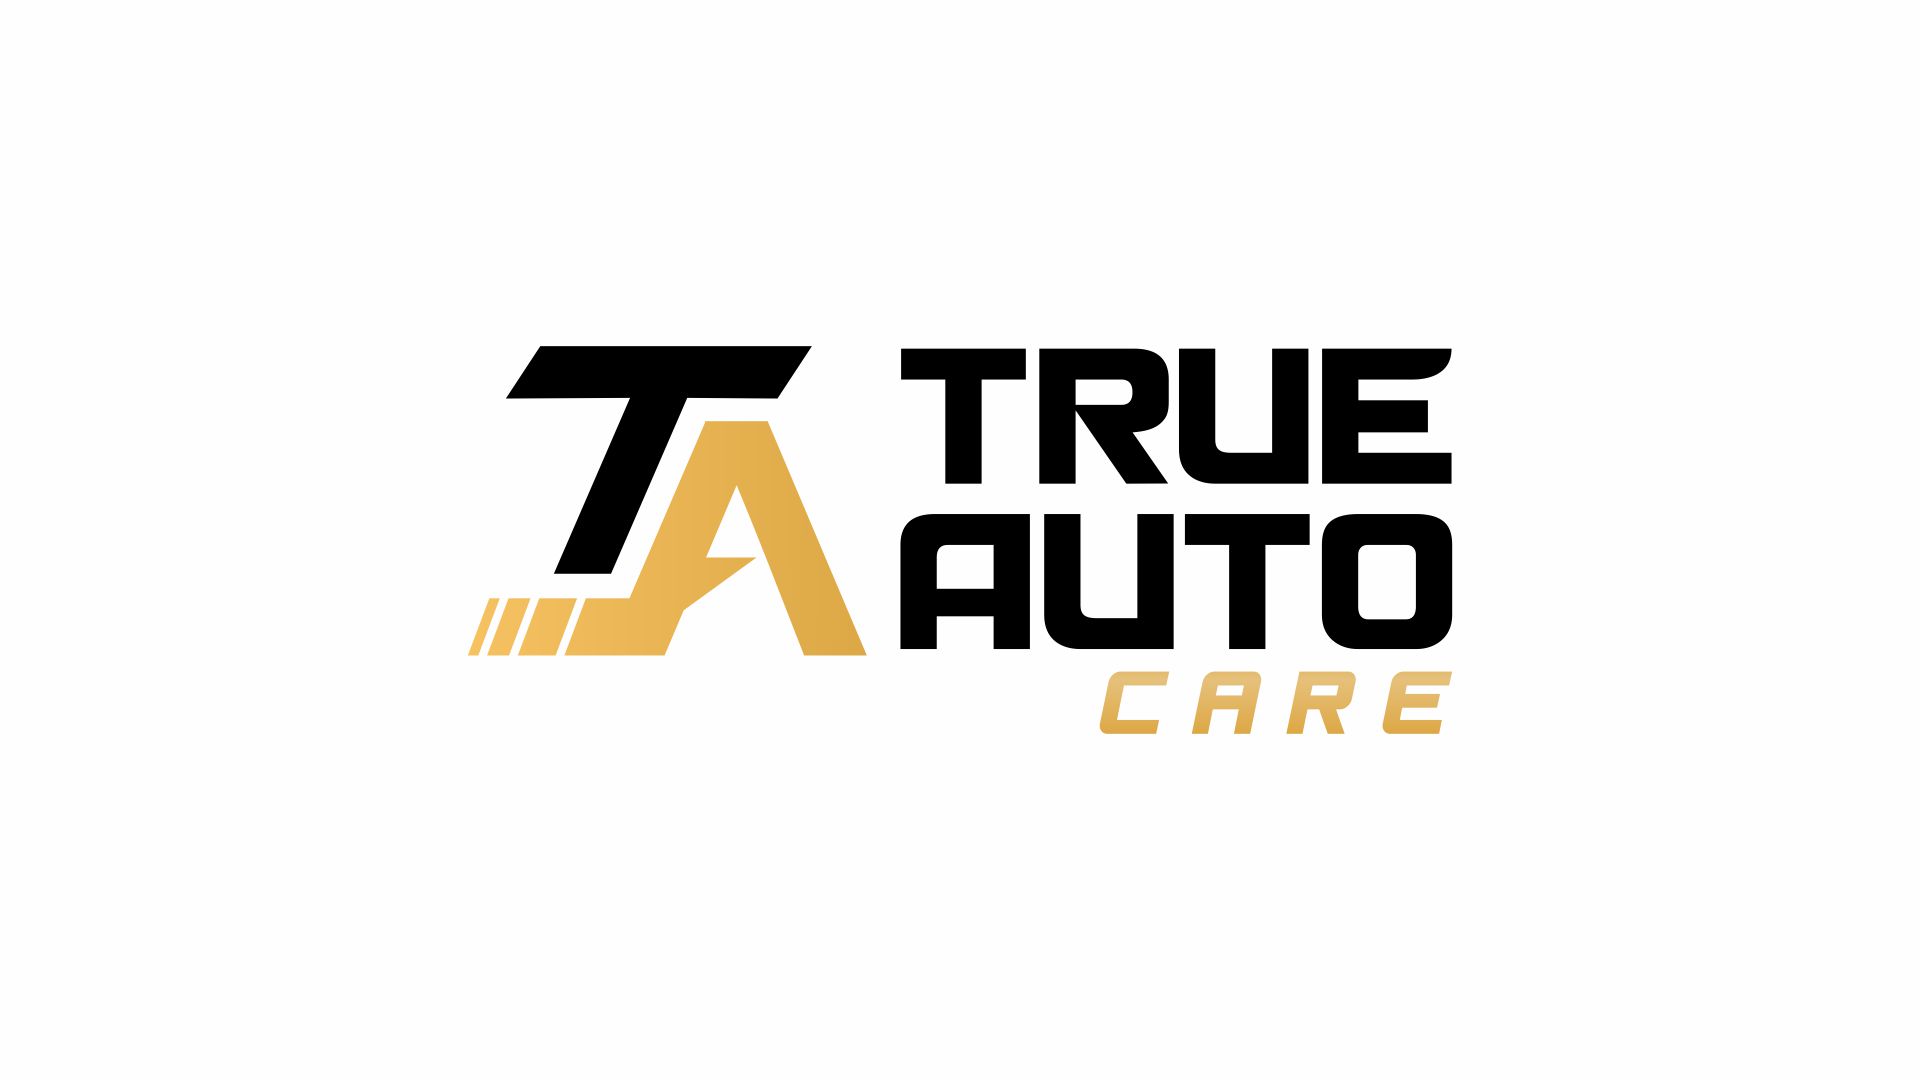 True Auto Care